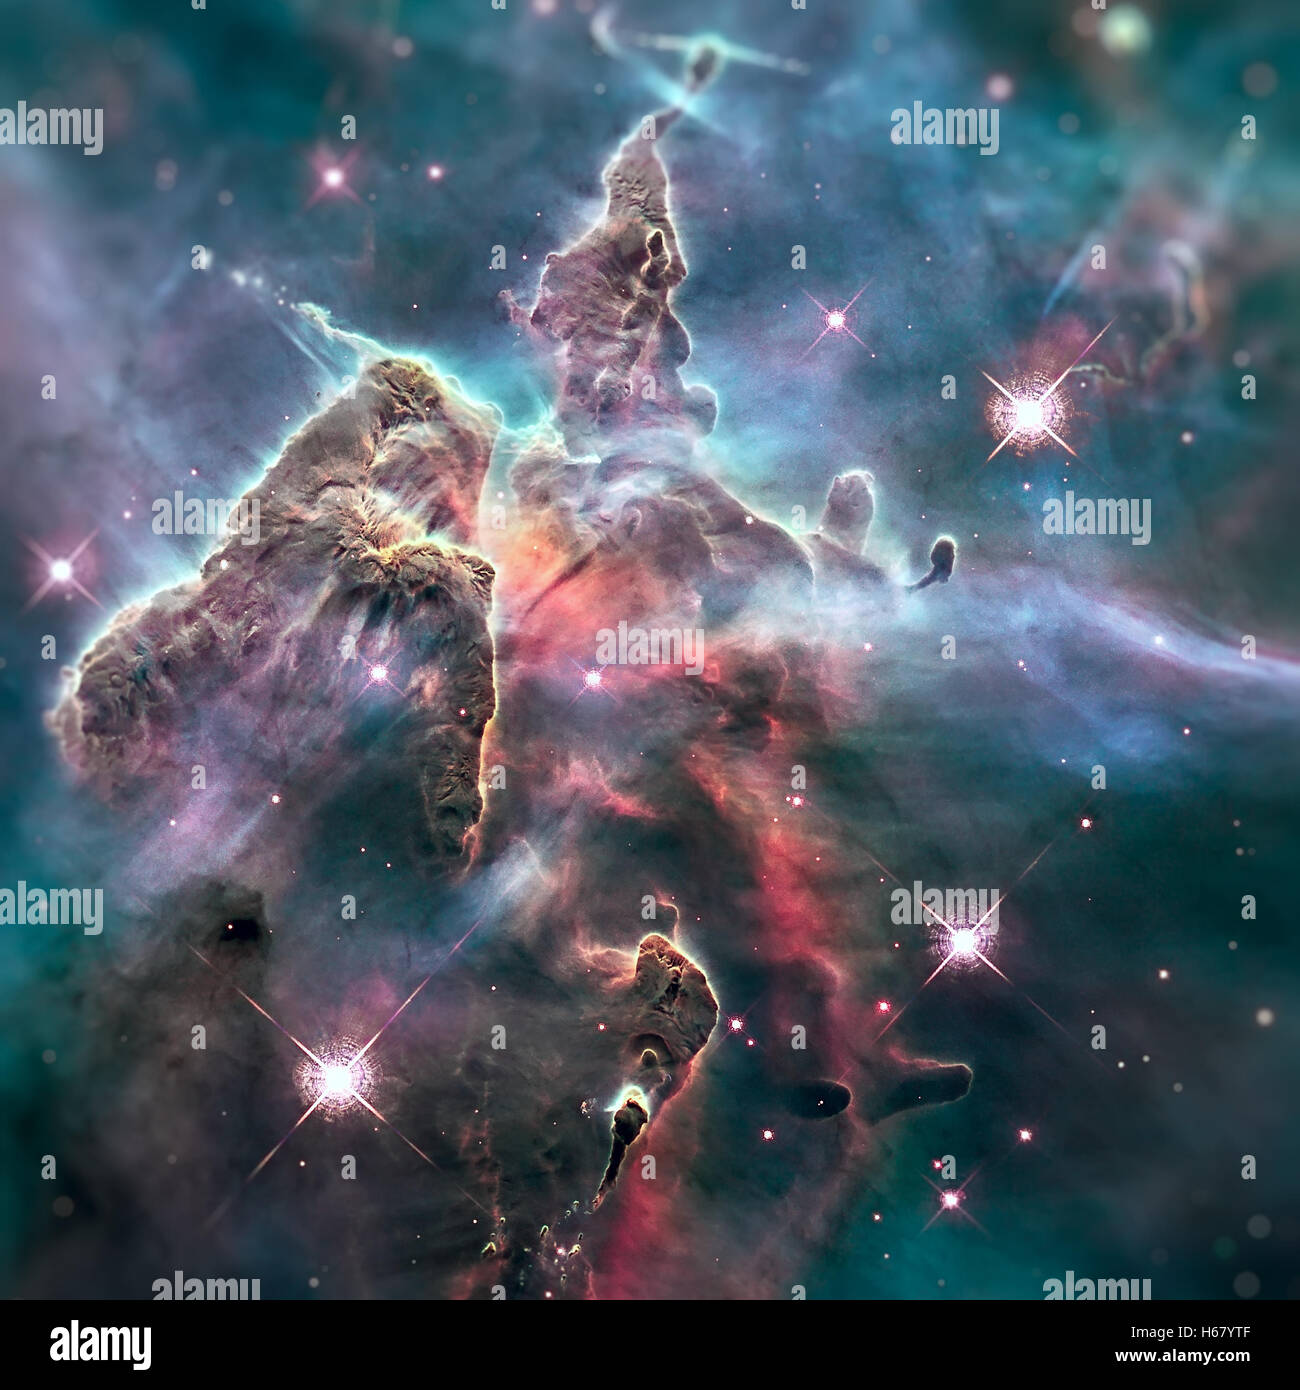 Mystic Mountain. Dans la région de la nébuleuse Carina imagé par le télescope spatial Hubble. Éléments de cette image fournie par la NASA. Banque D'Images